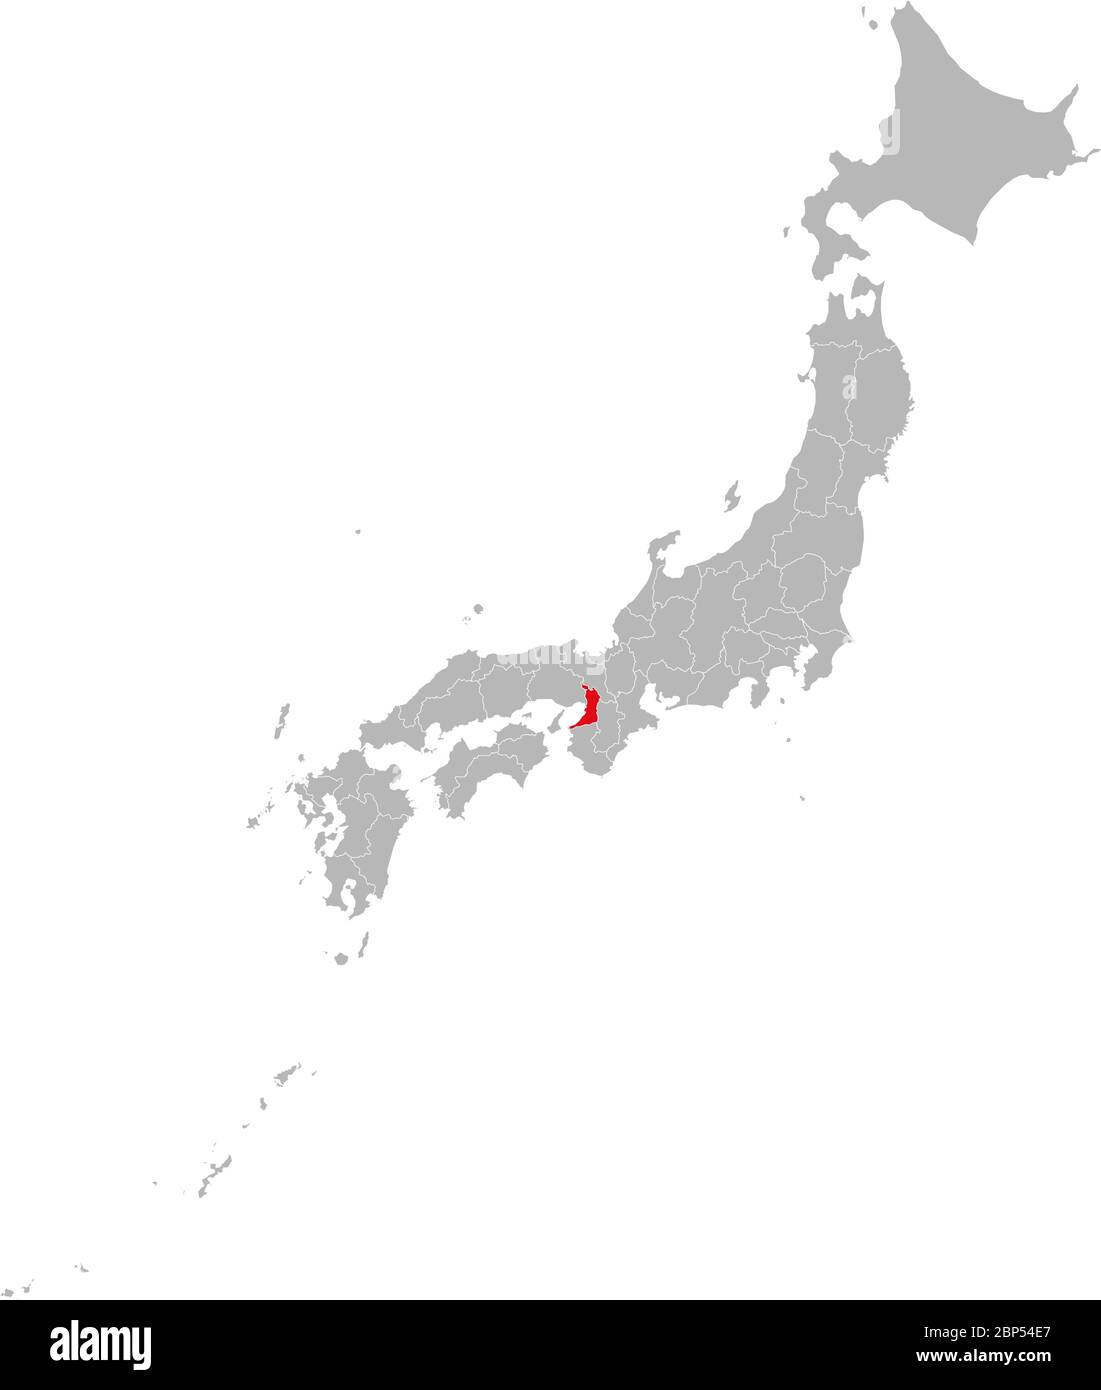 Province d'Osaka mise en surbrillance en rouge sur la carte du Japon. Fond gris. Concepts et antécédents professionnels. Illustration de Vecteur